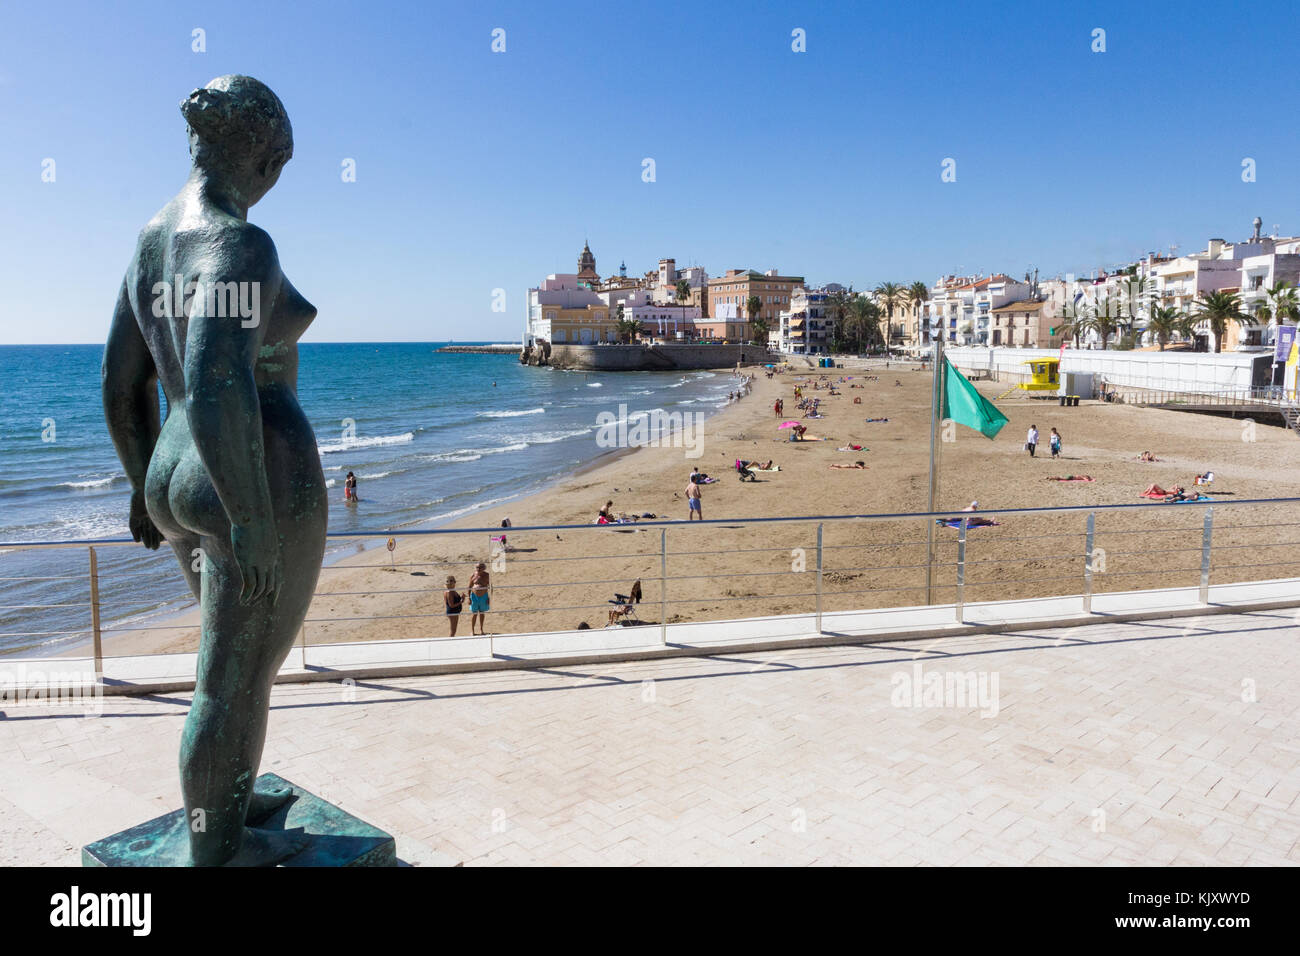 Statue surplombant Platja de Sant Sebastià, Sitges, Catalogne, Espagne Banque D'Images